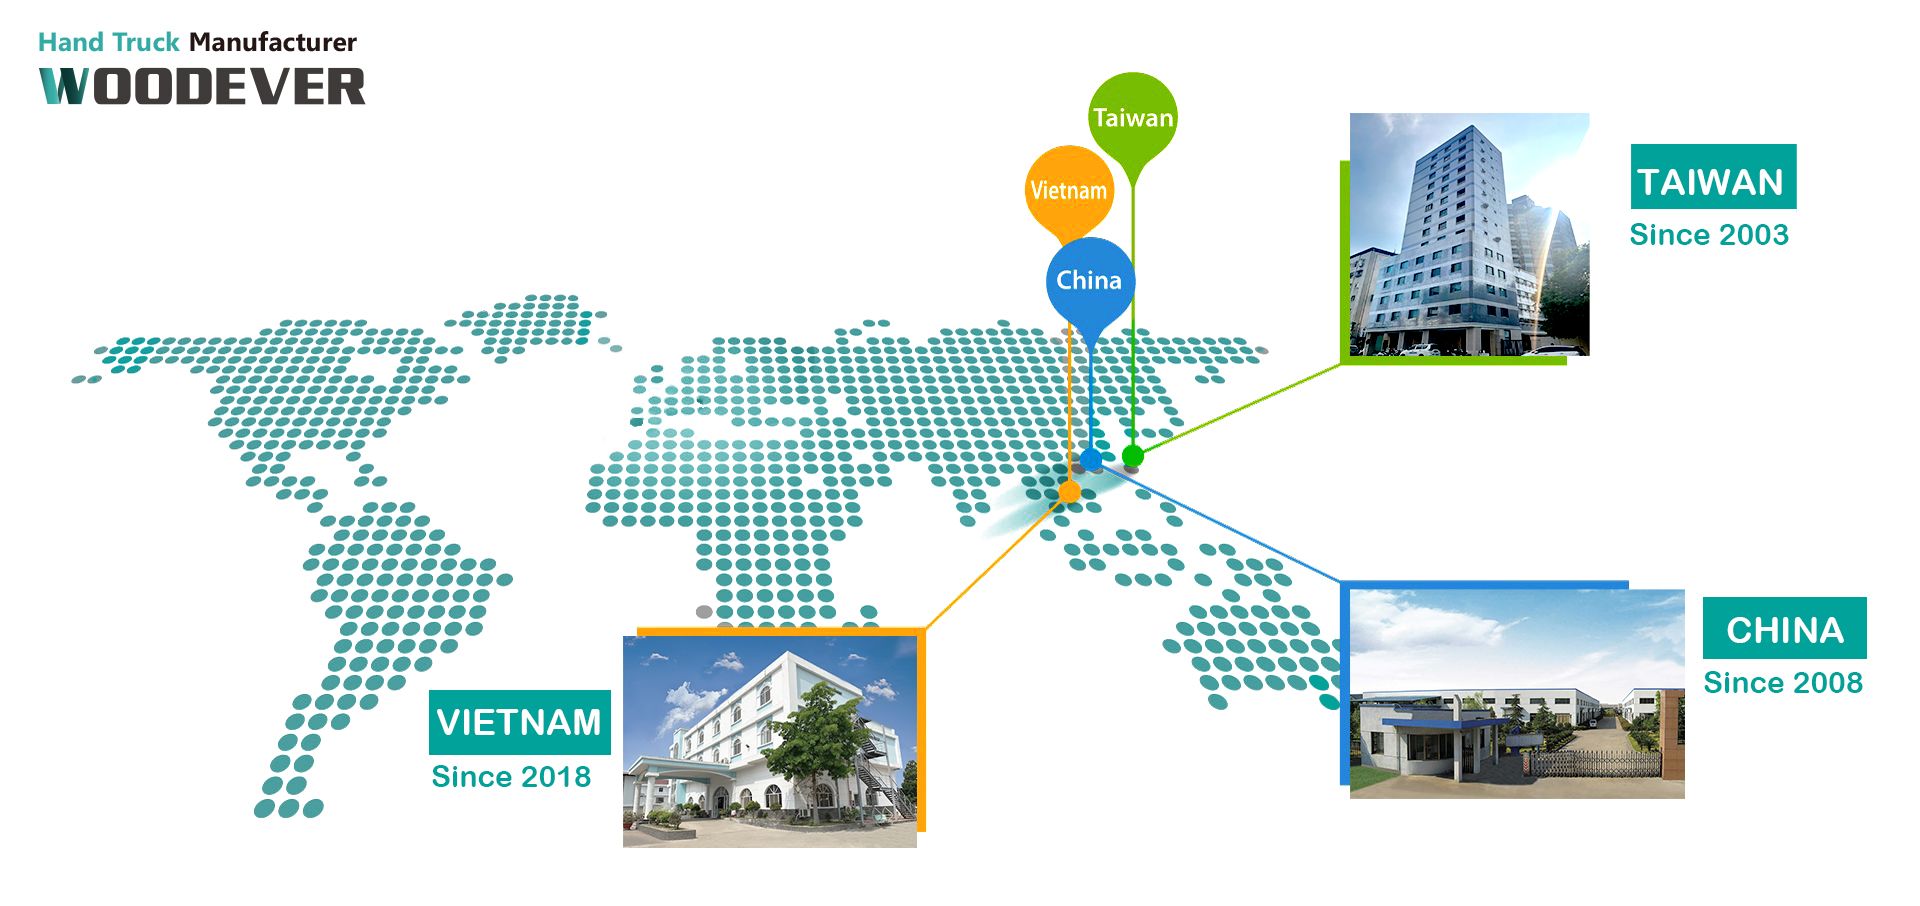 WOODEVER имеет штаб-квартиру в городе Тайчжун, Тайвань, и 2 производственные фабрики в Китае и Вьетнаме